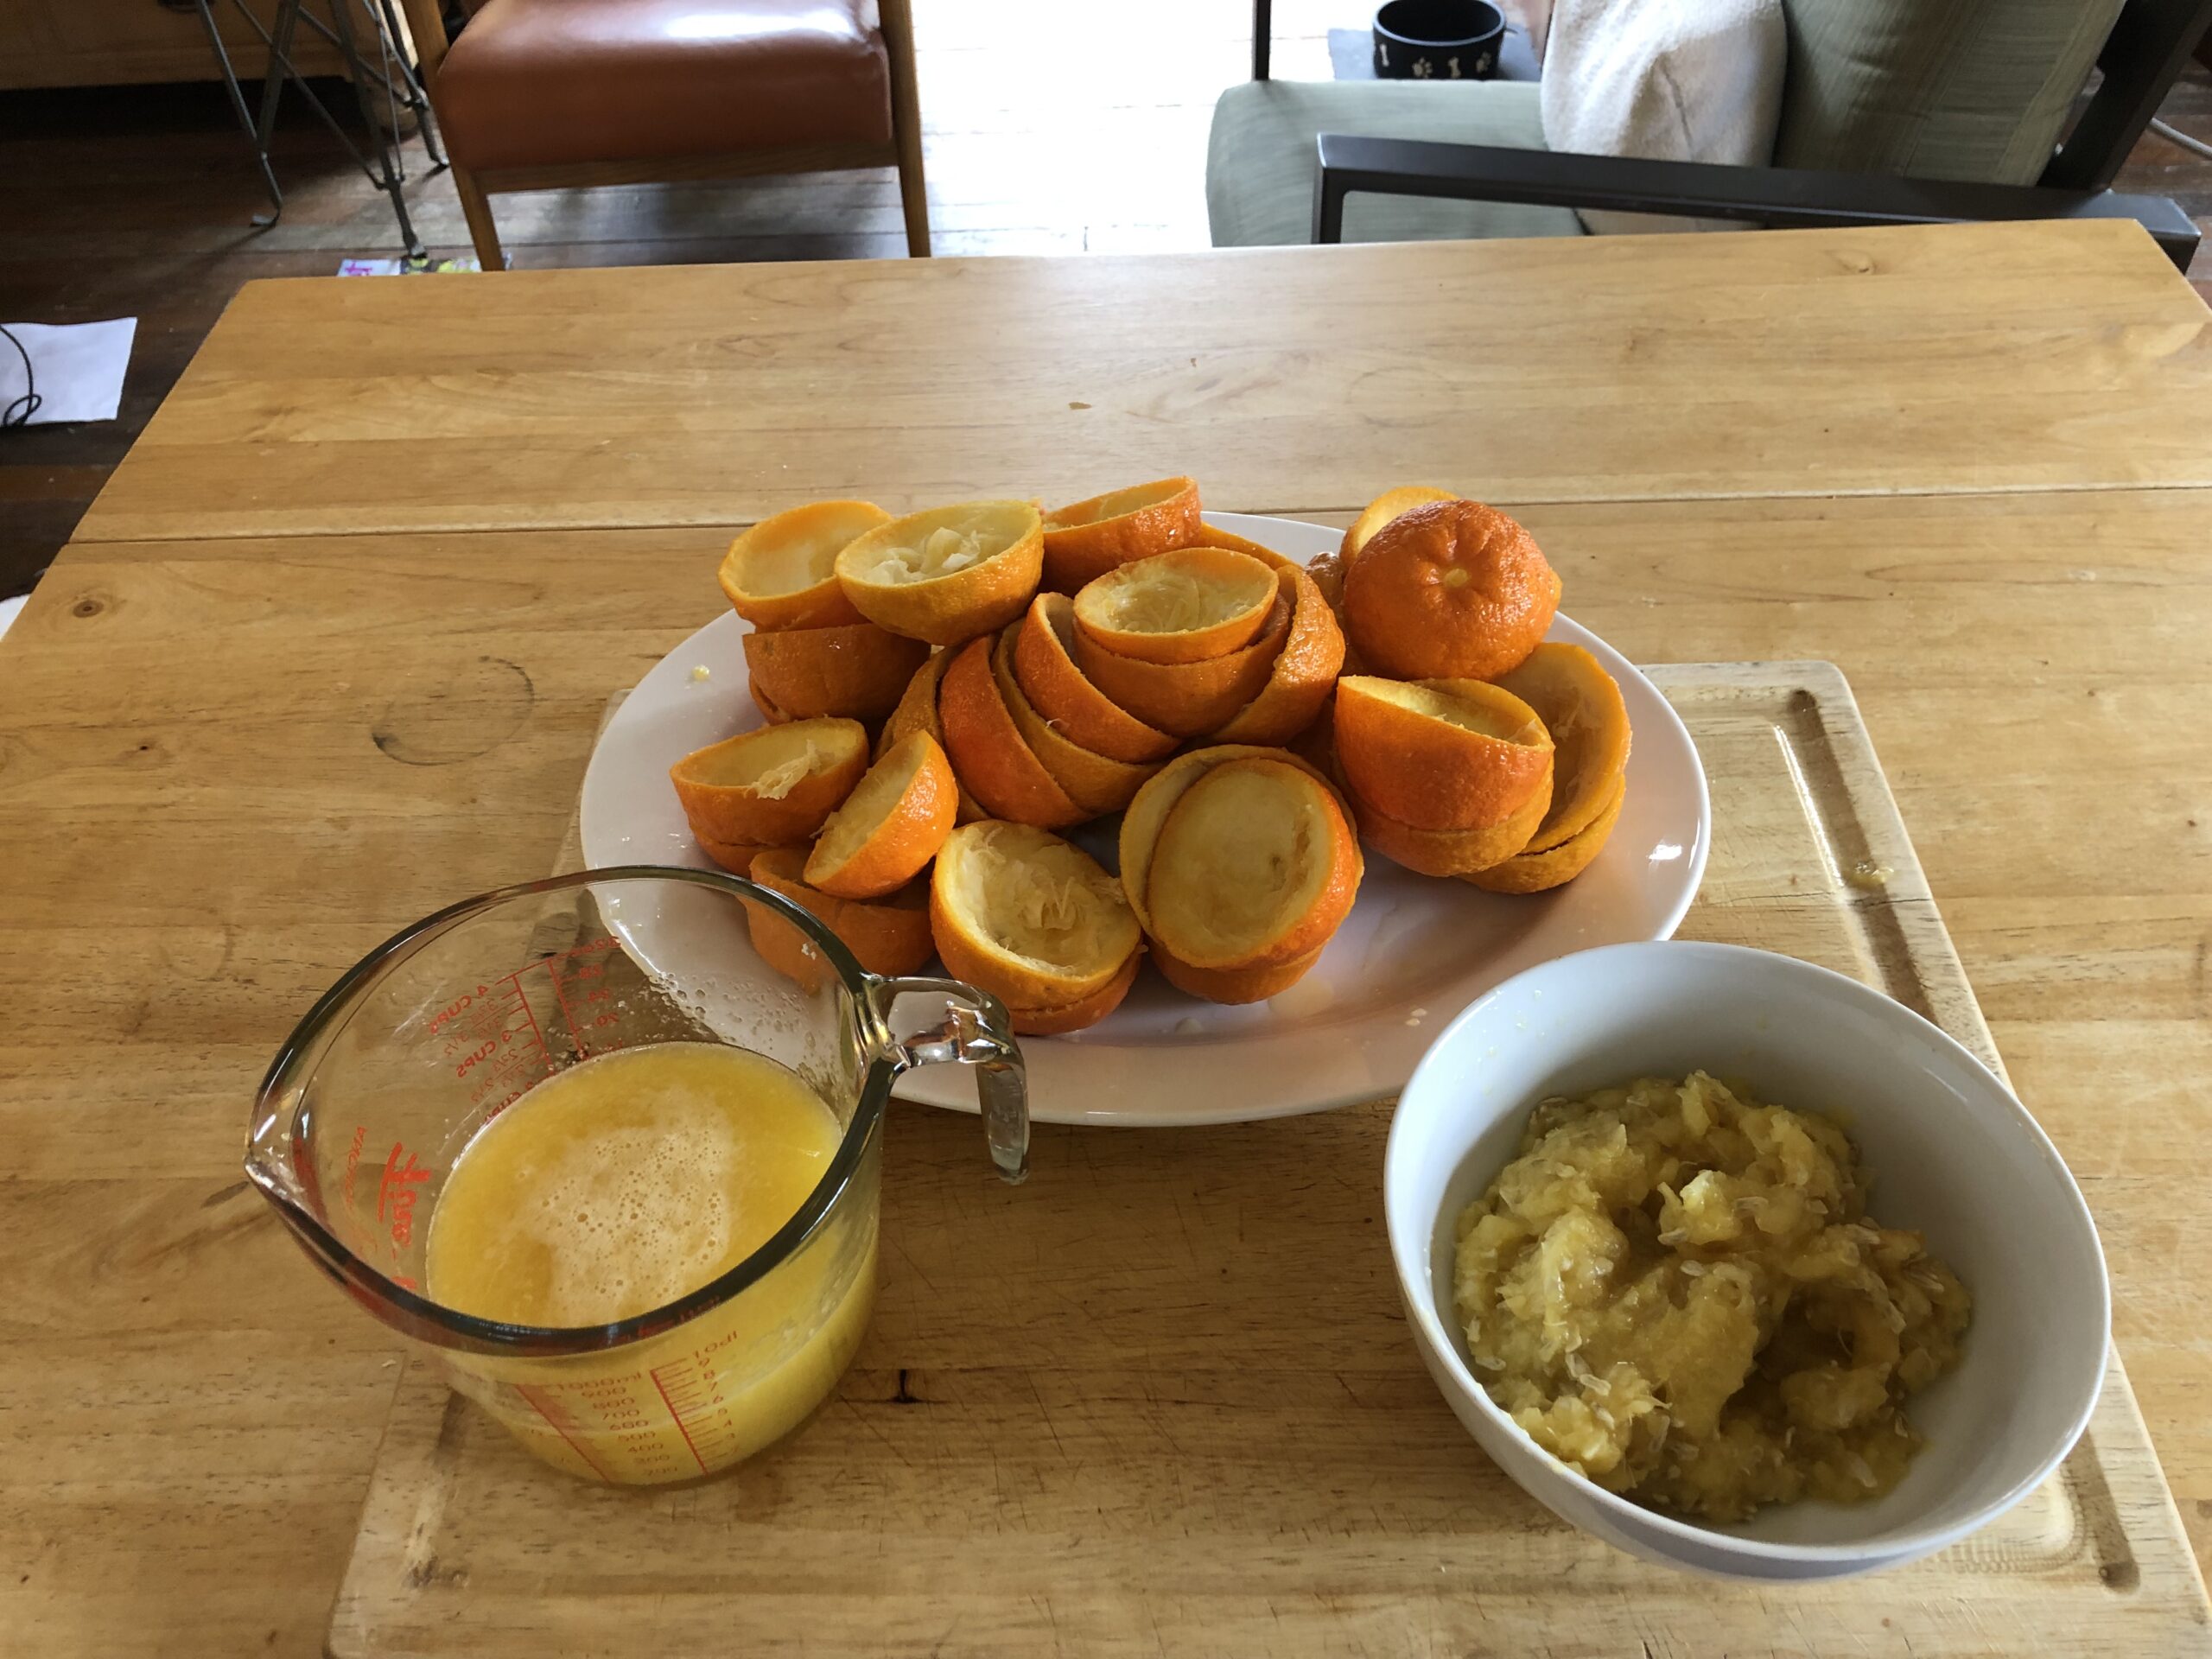 seville oranges for marmalade